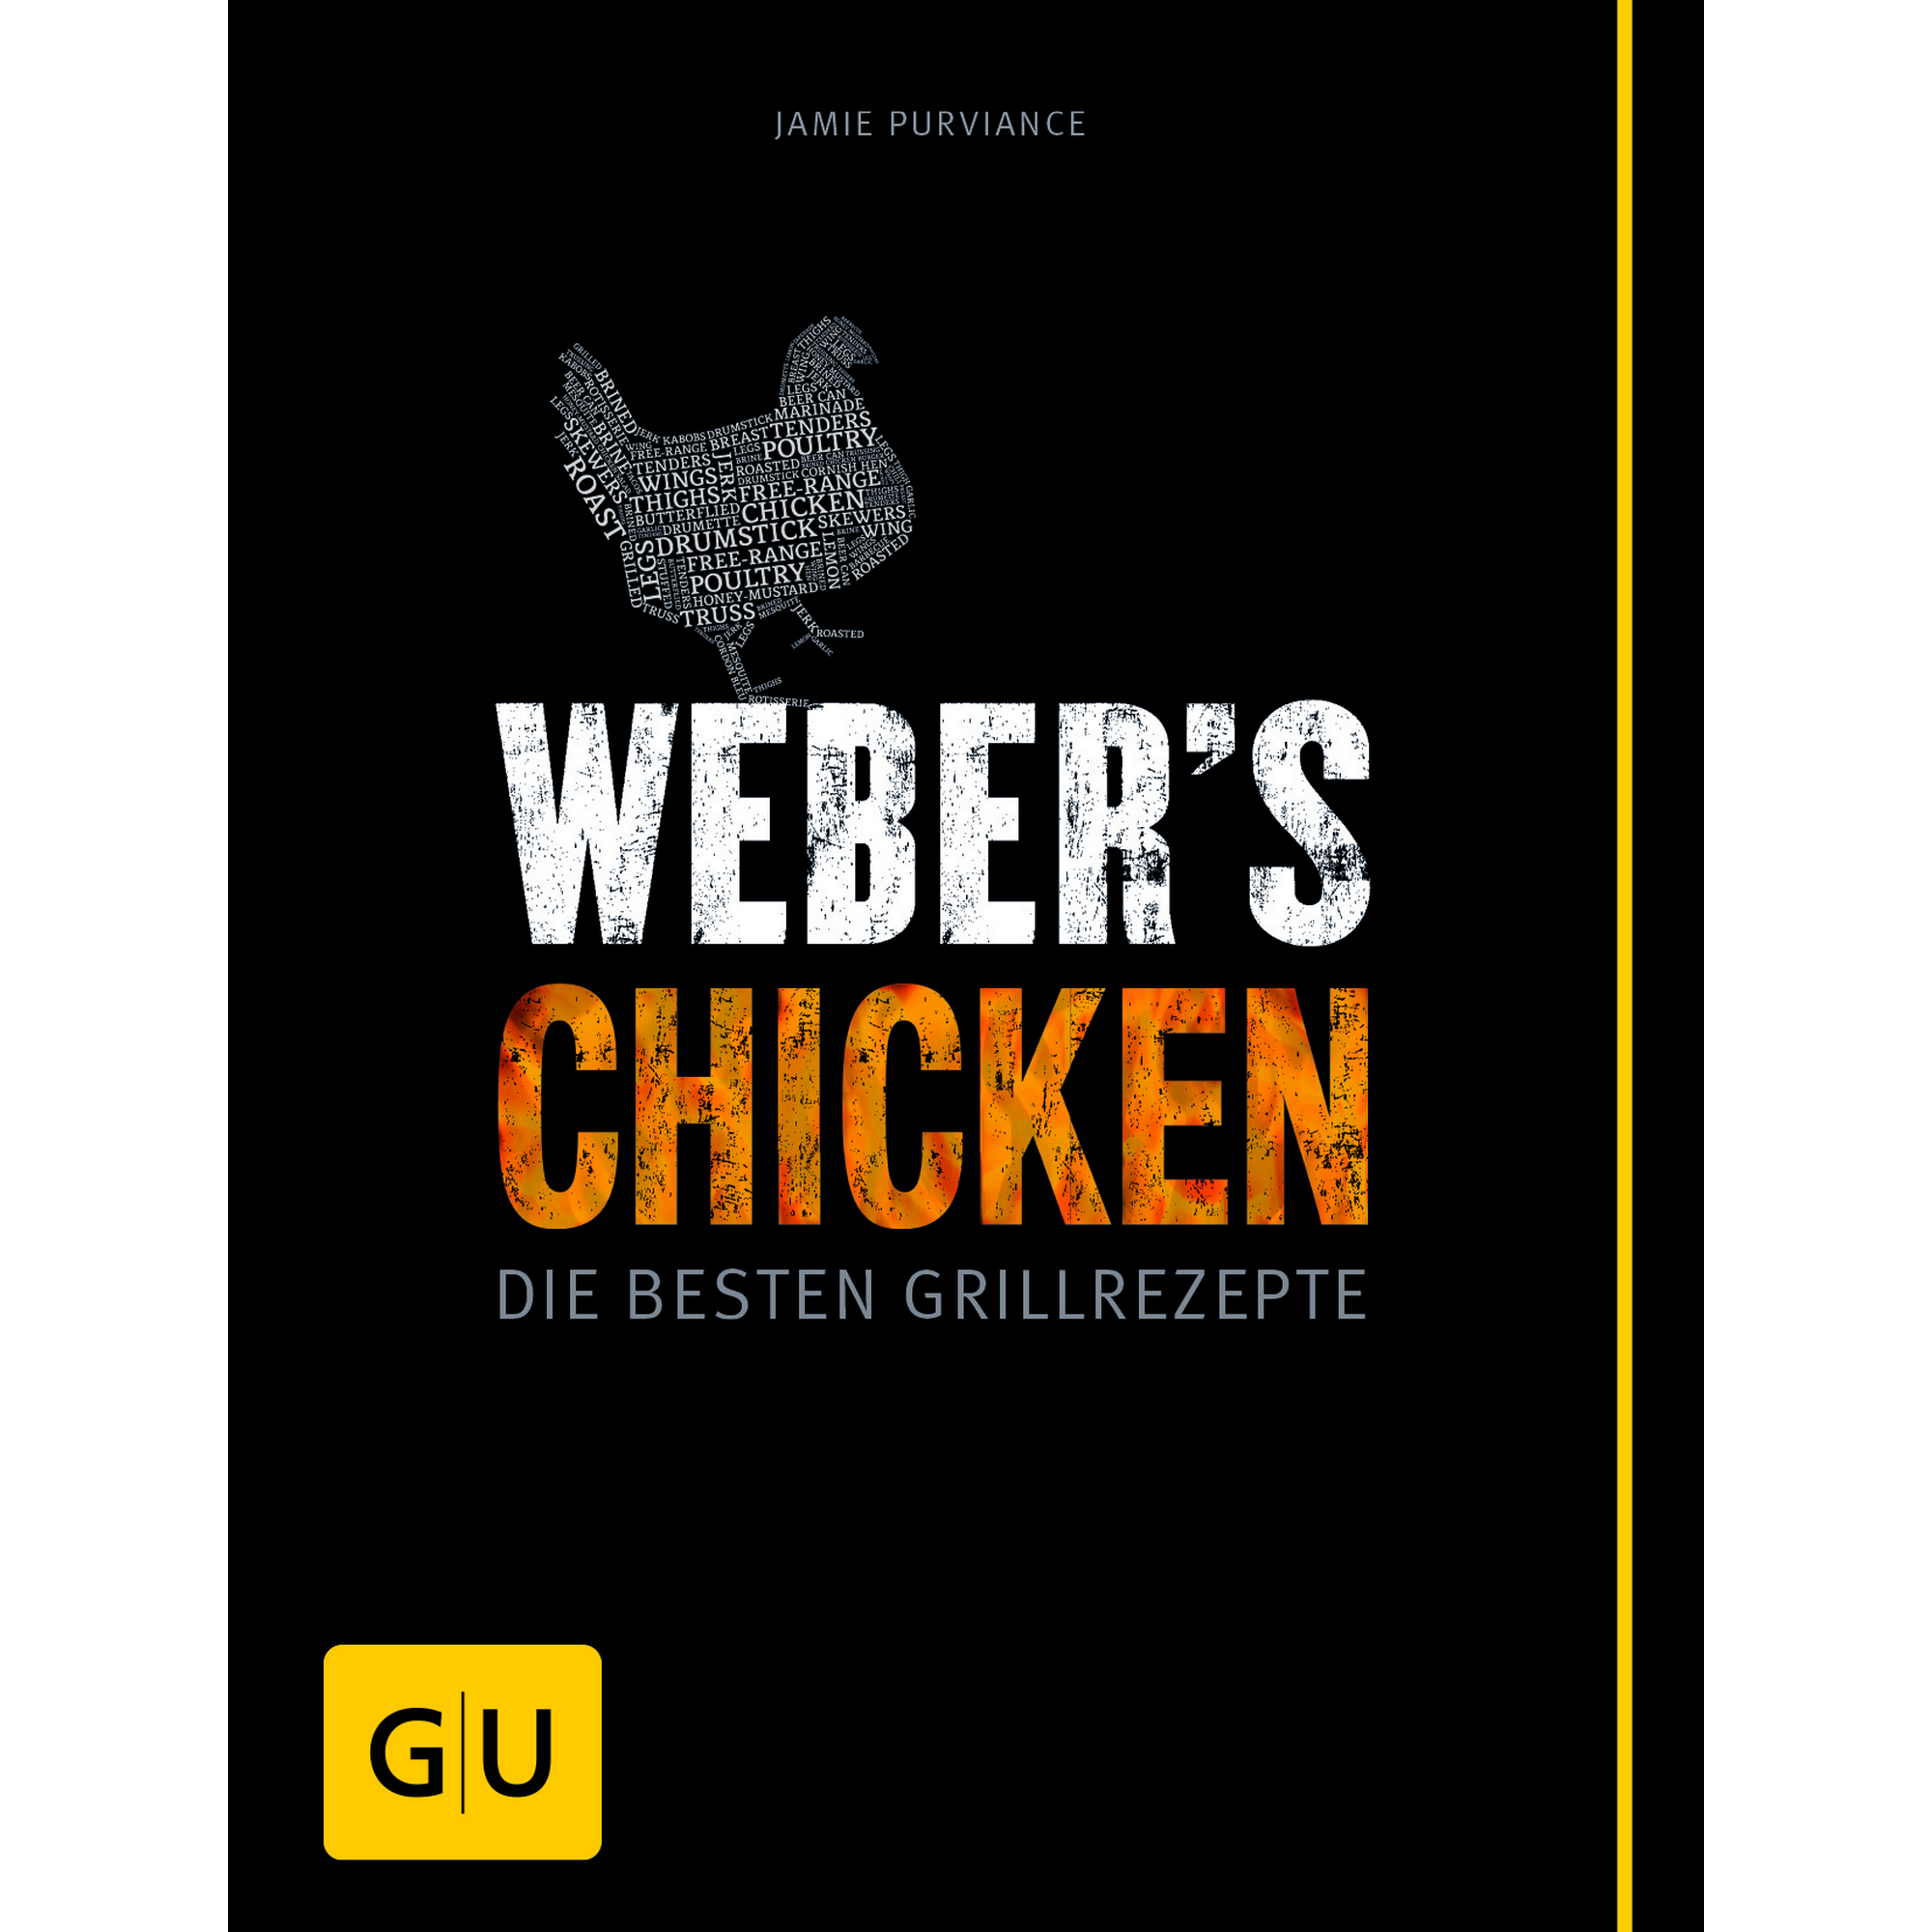 Grillbuch Jamie Purviance 'Weber's Chicken: Die besten Grillrezepte' + product picture